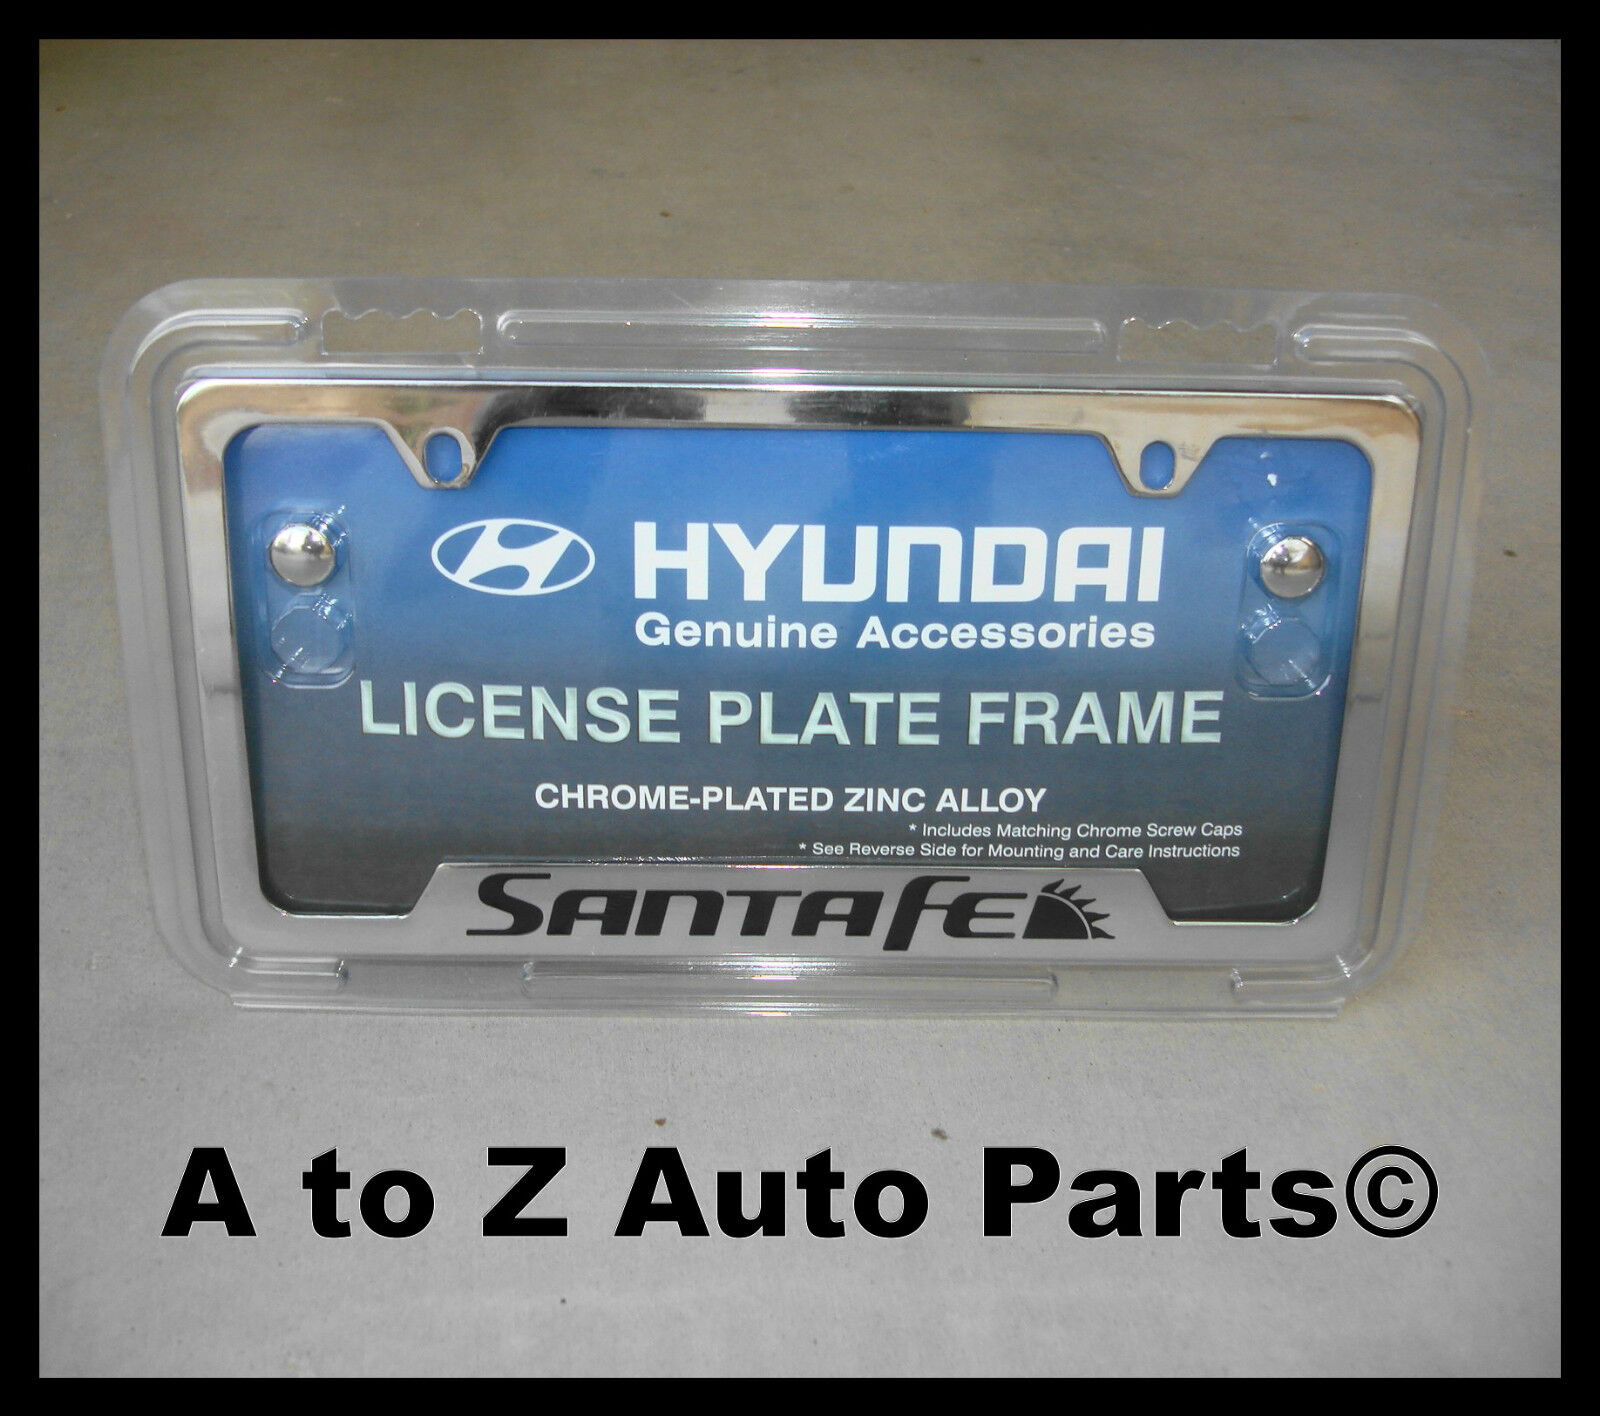 NEW 2005-2023 Santa Fe Chrome License Plate Frame, OEM Hyundai